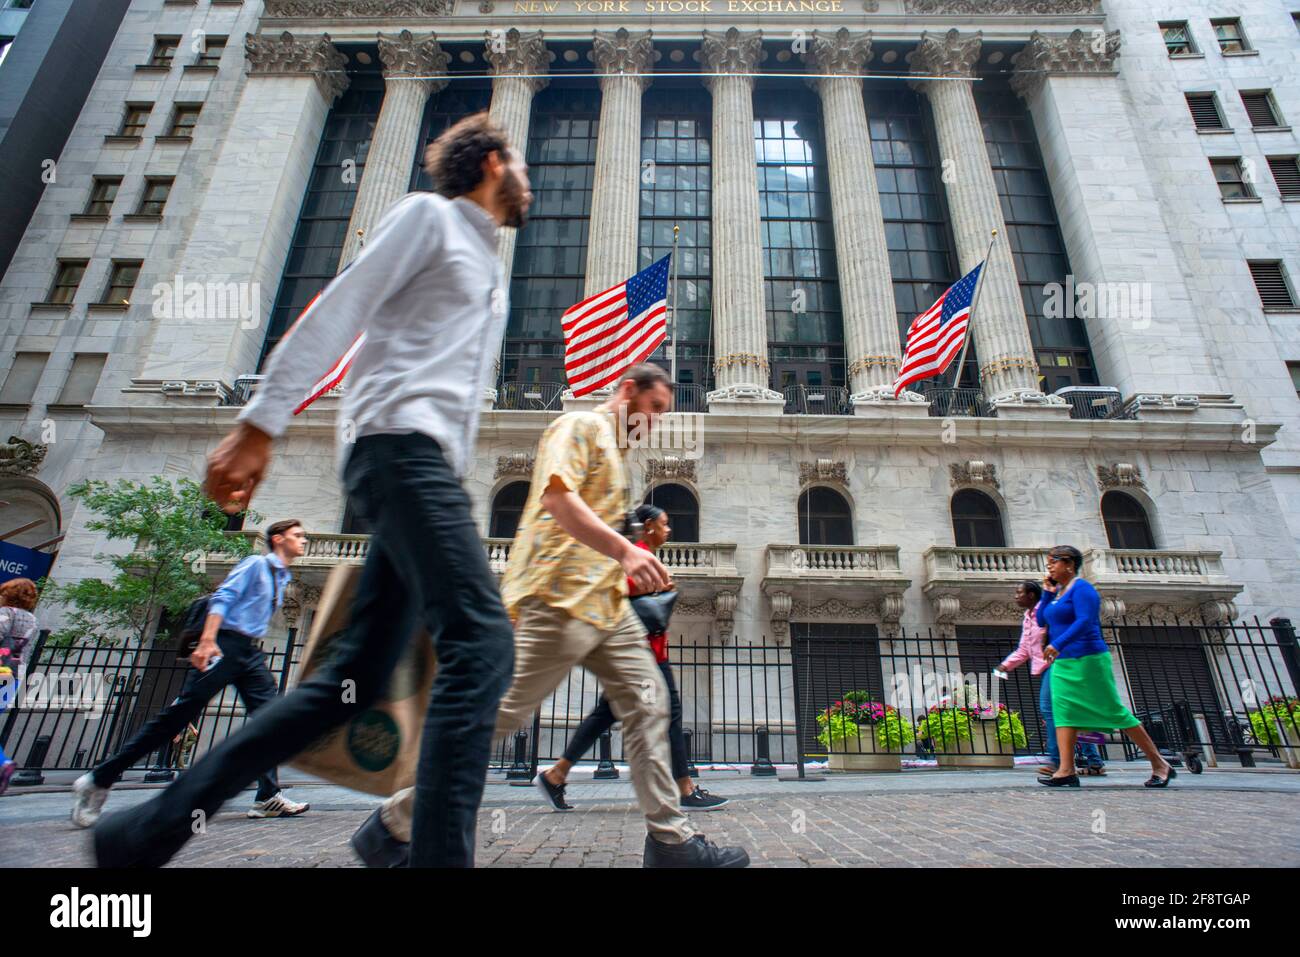 La Borsa di New York è una Borsa americana situata a 11 Wall Street, Lower  Manhattan, New York City. La Borsa di New York (A Foto stock - Alamy